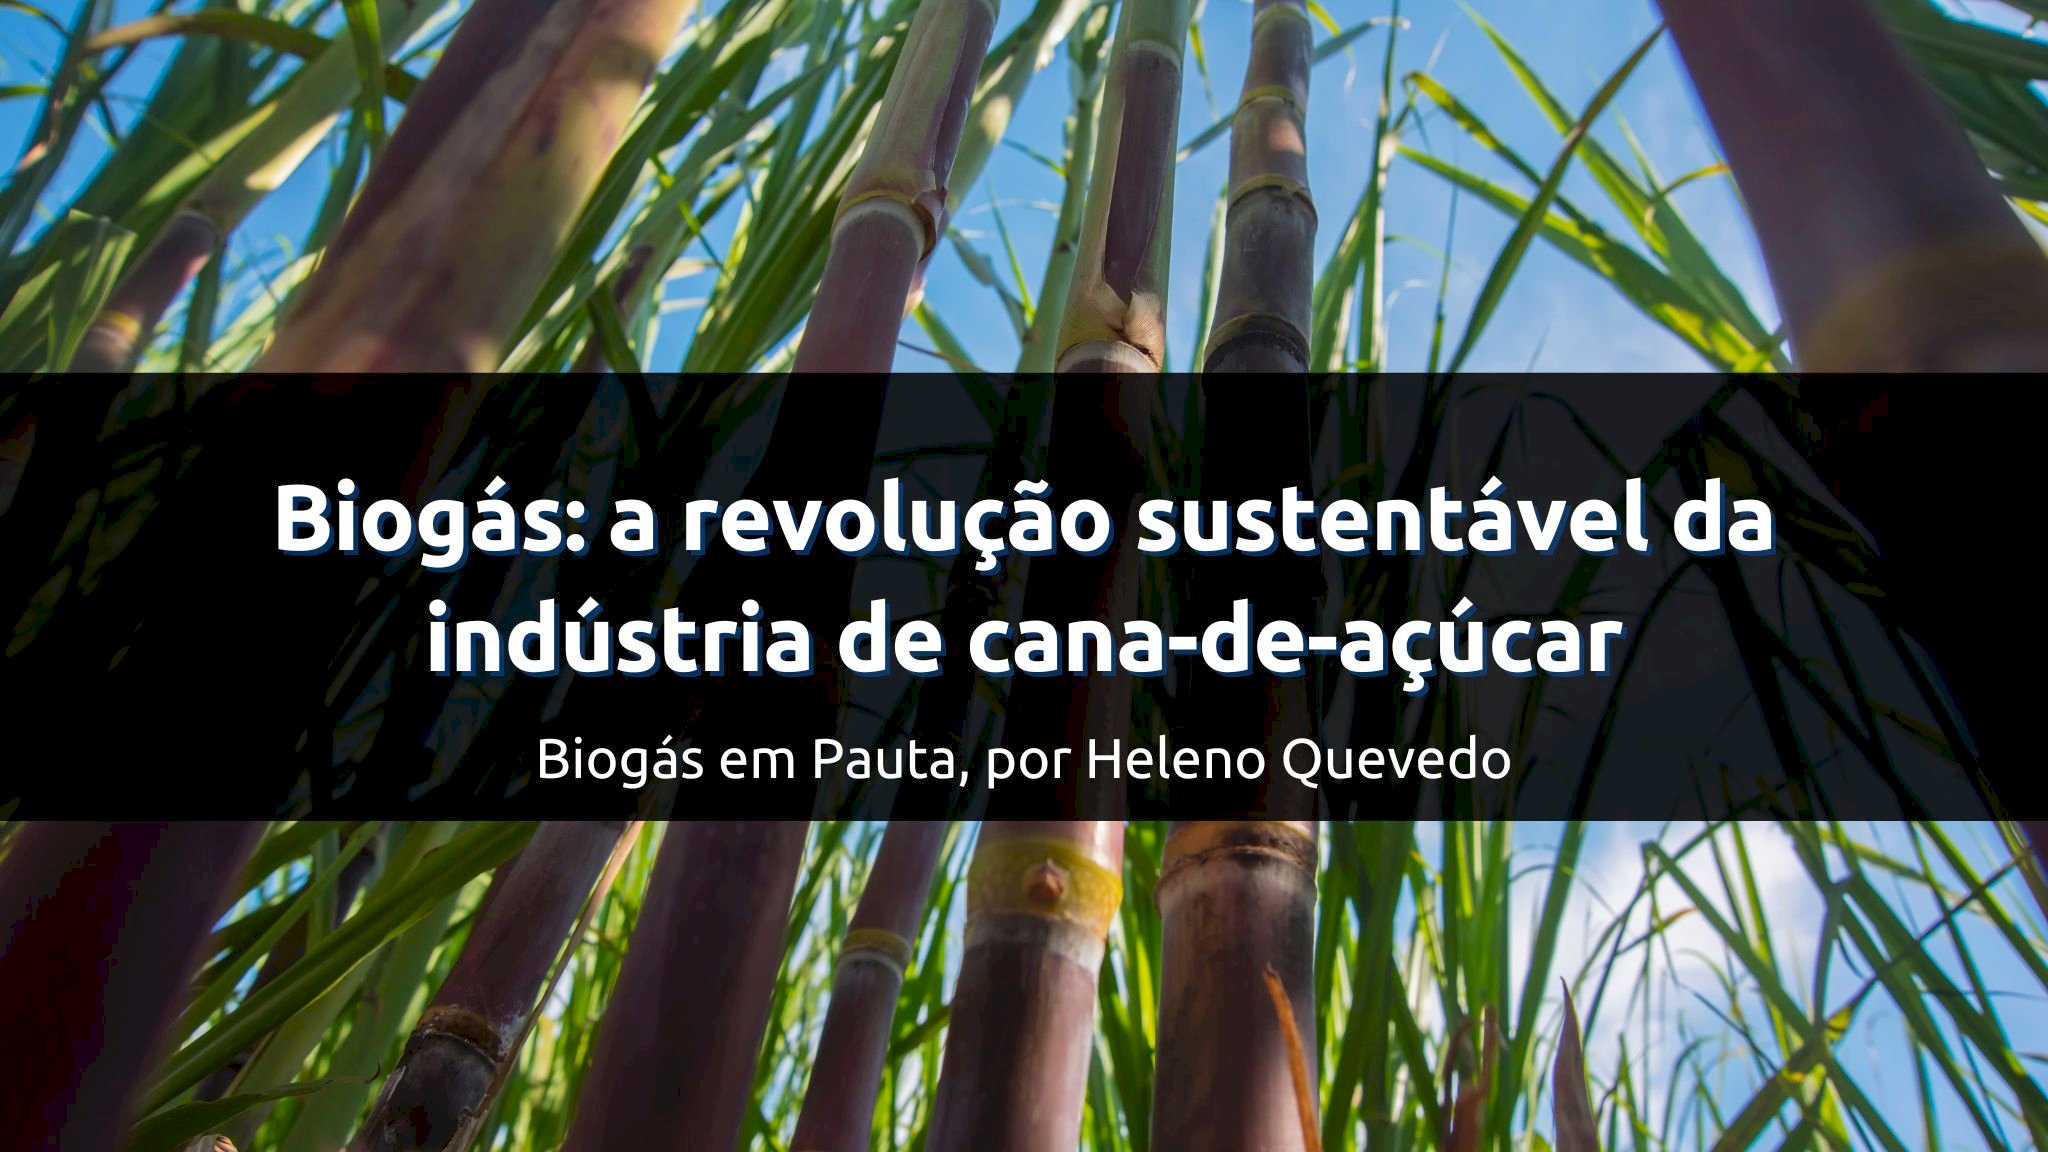 Biogás: a revolução sustentável da indústria de cana-de-açúcar